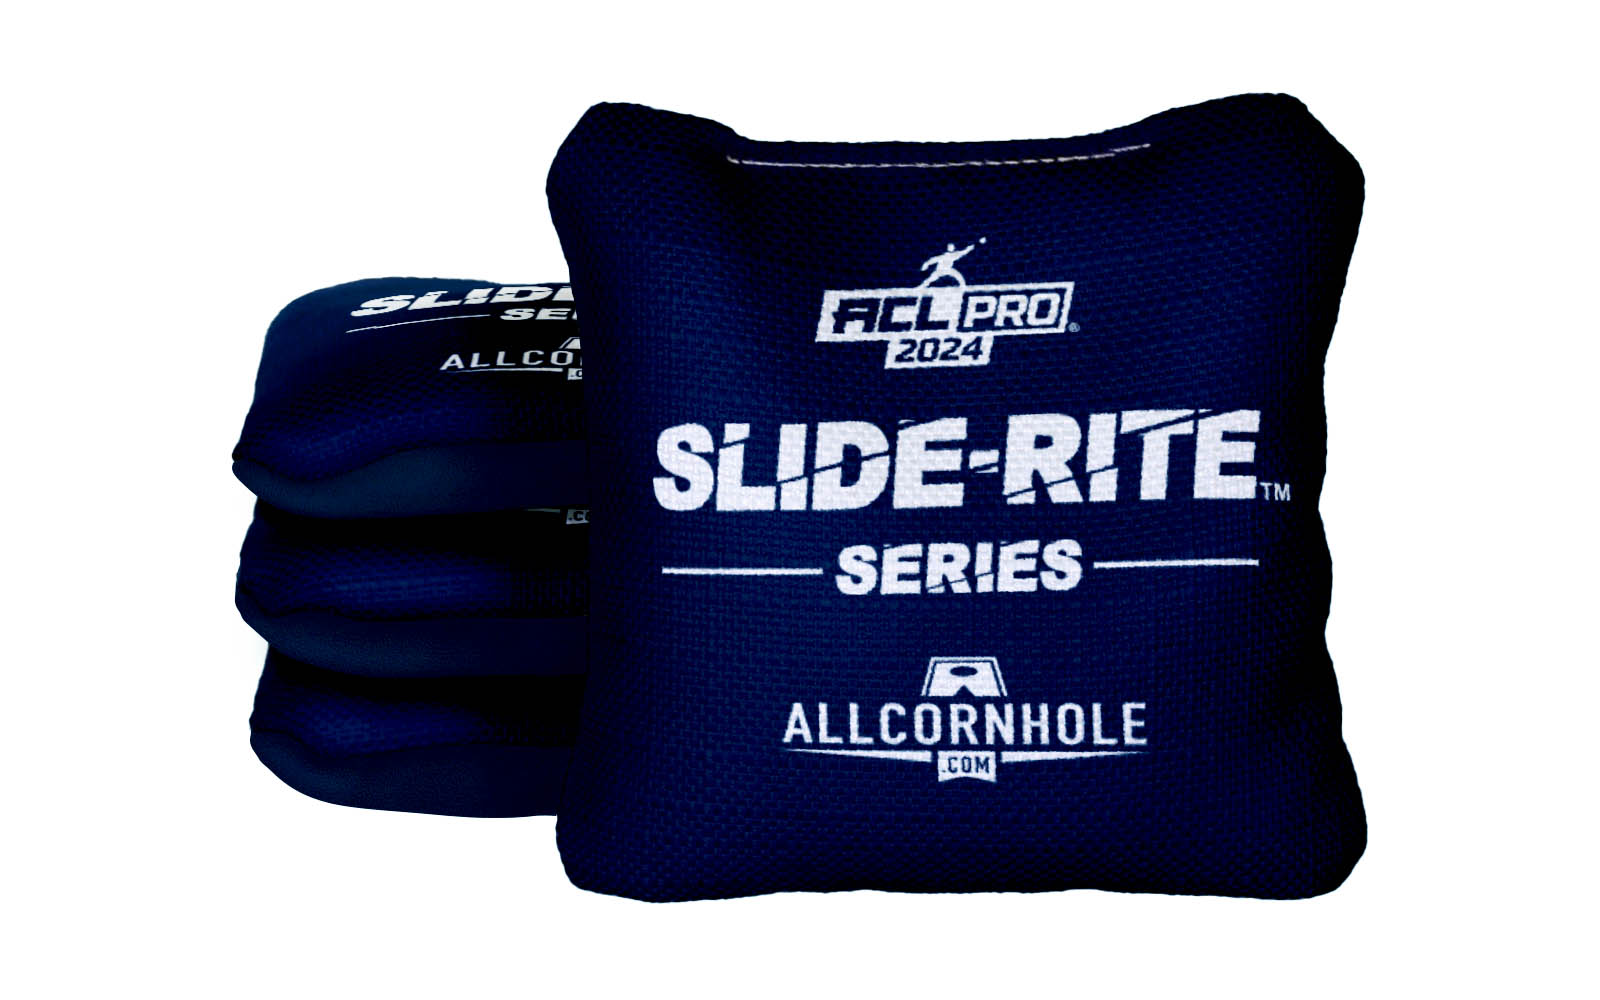 Officially Licensed Collegiate Cornhole Bags - AllCornhole Slide Rite - Set of 4 - Pennsylvania State University